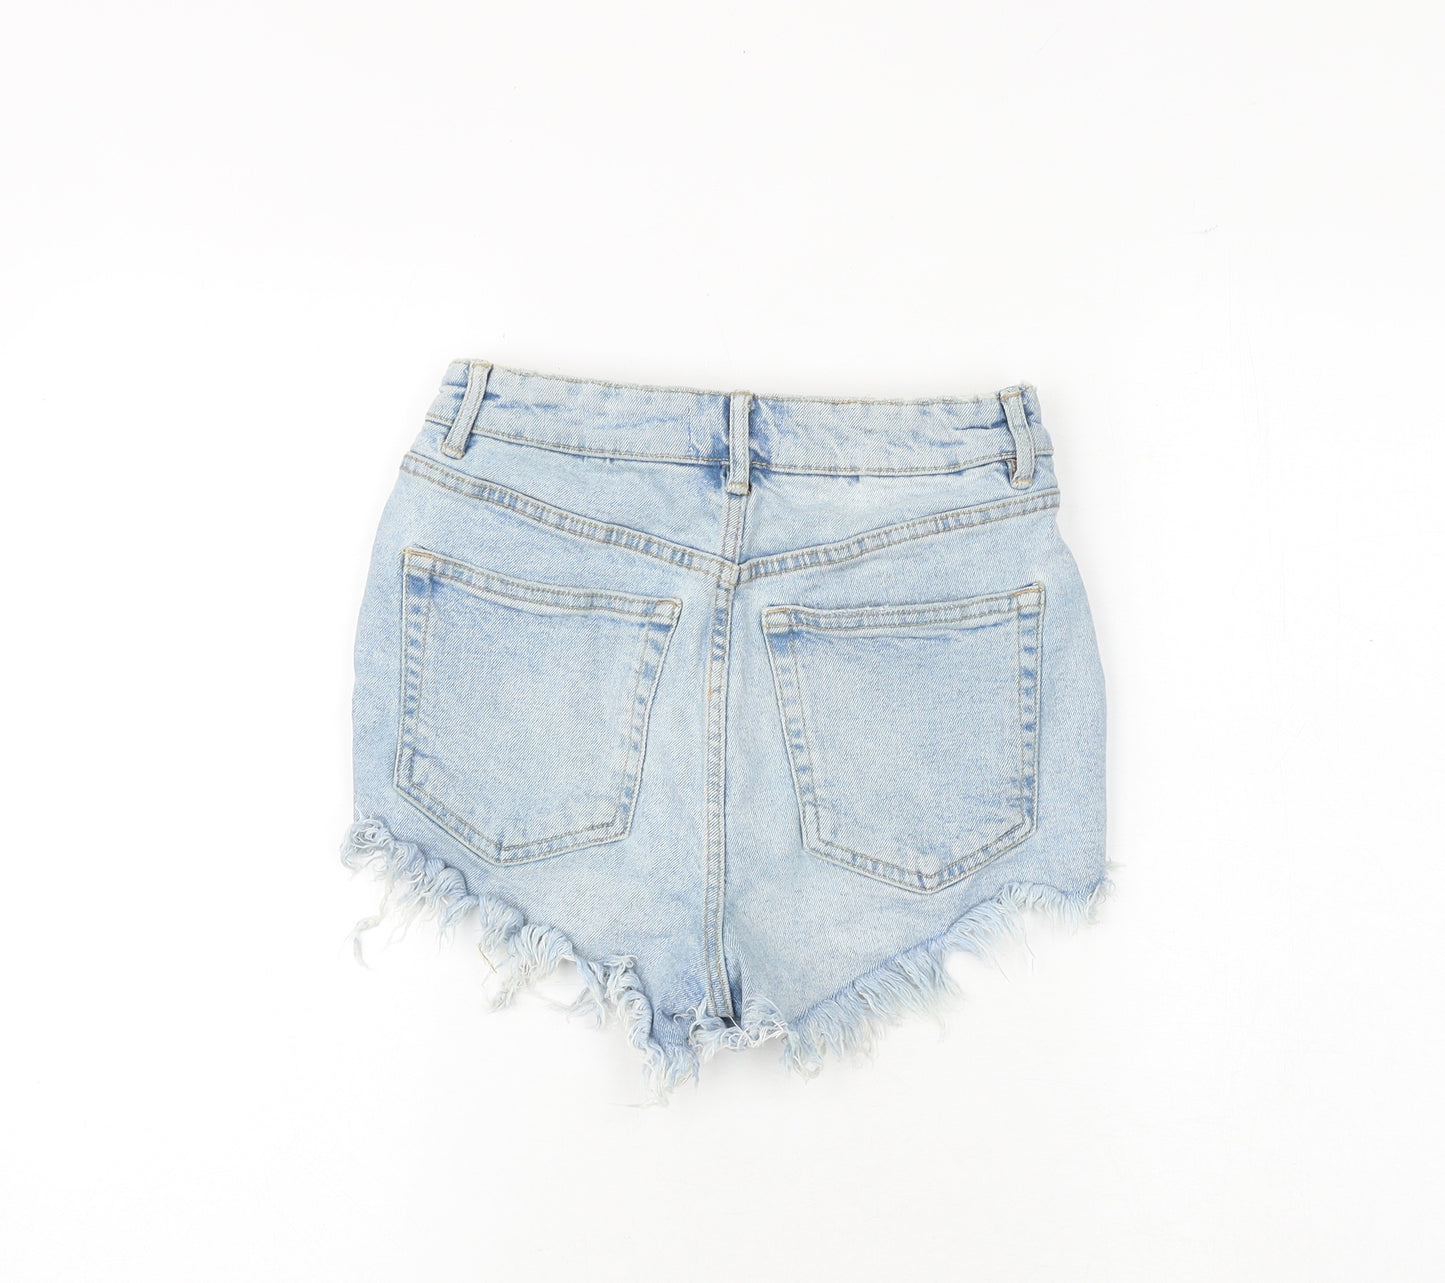 Zara Womens Blue Cotton Cut-Off Shorts Size 6 Regular Zip